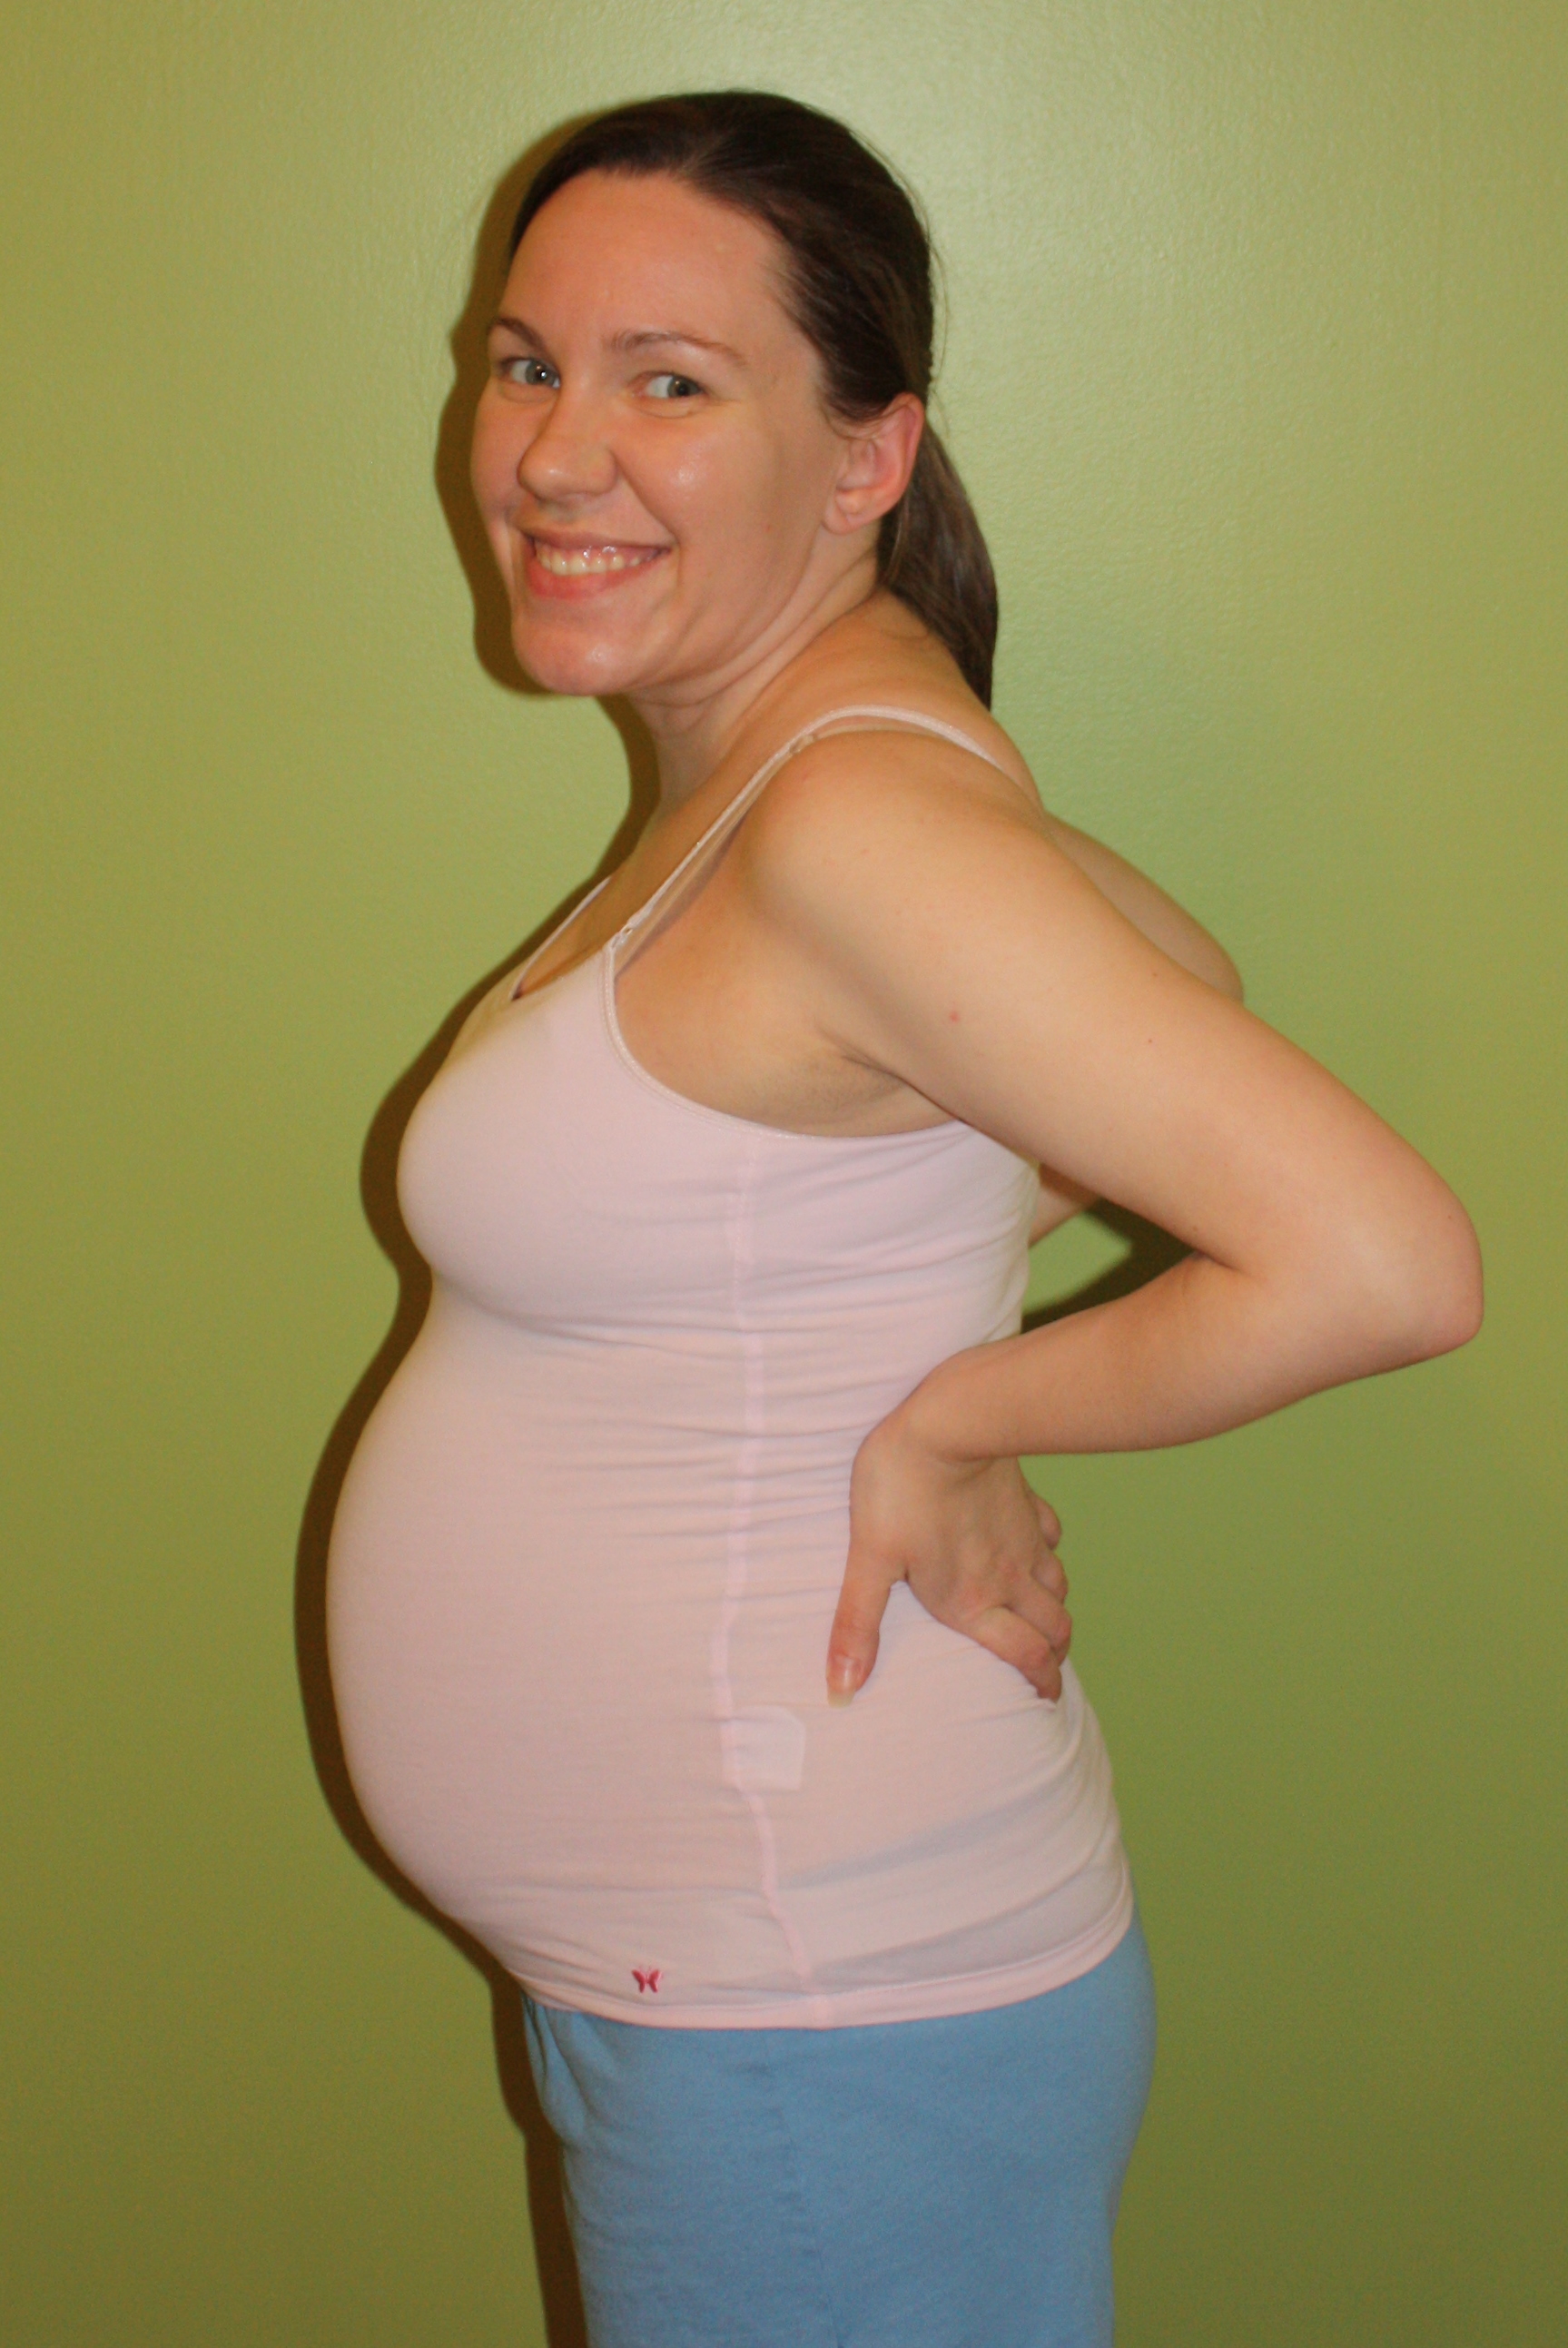 31 неделя 23. Живот на 26 неделе. Живот на 29 неделе беременности. Живот на 28 неделе беременности. Женщины с большими животами.